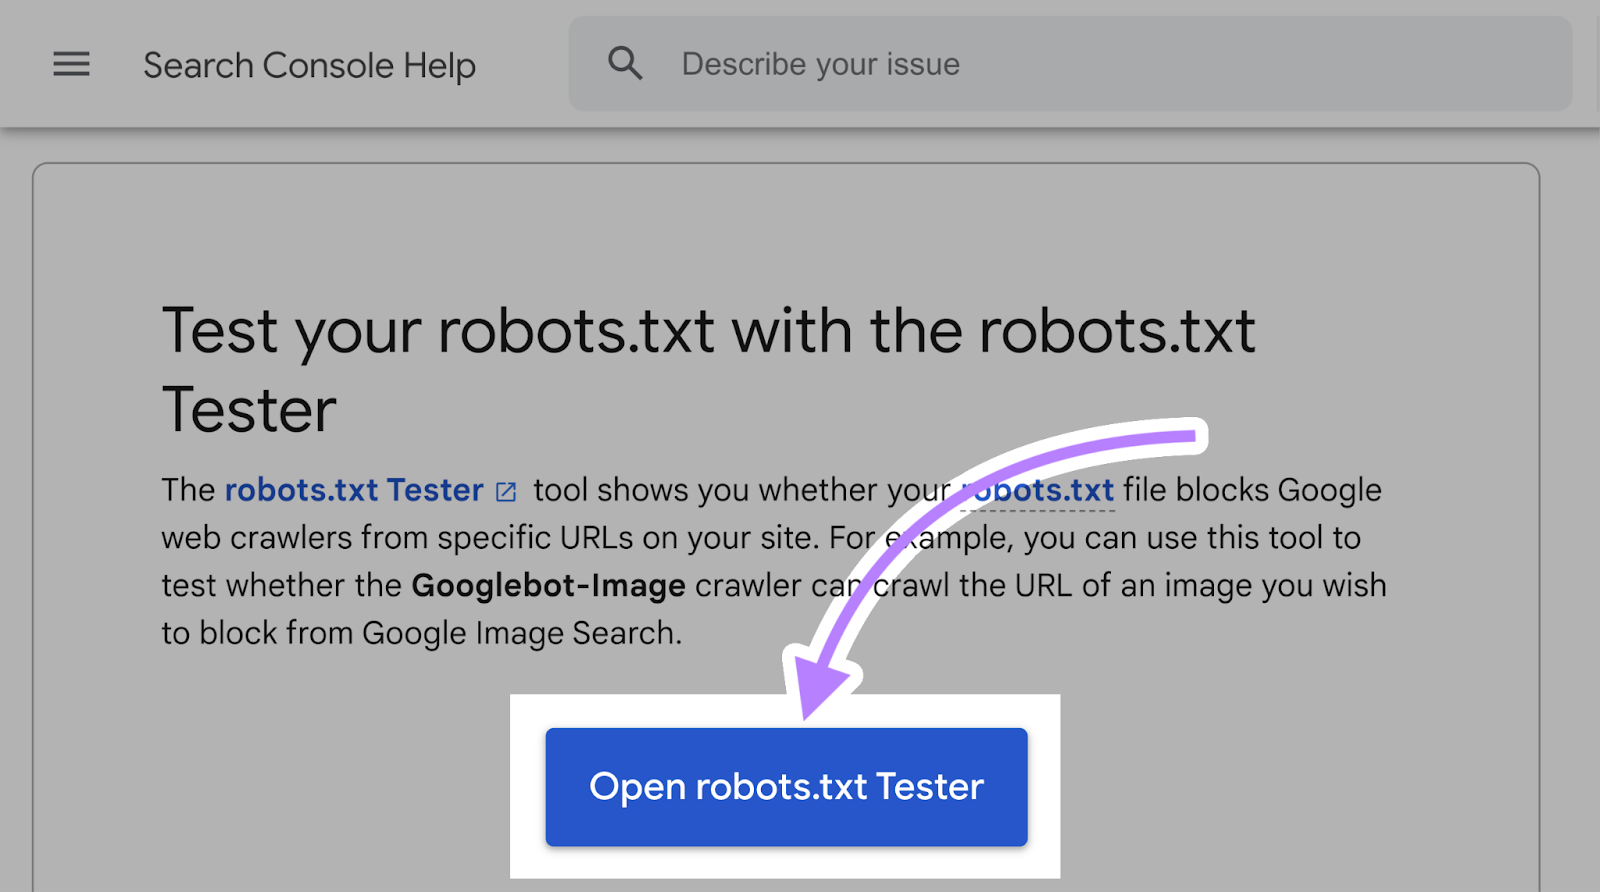 Open robots.txt Tester